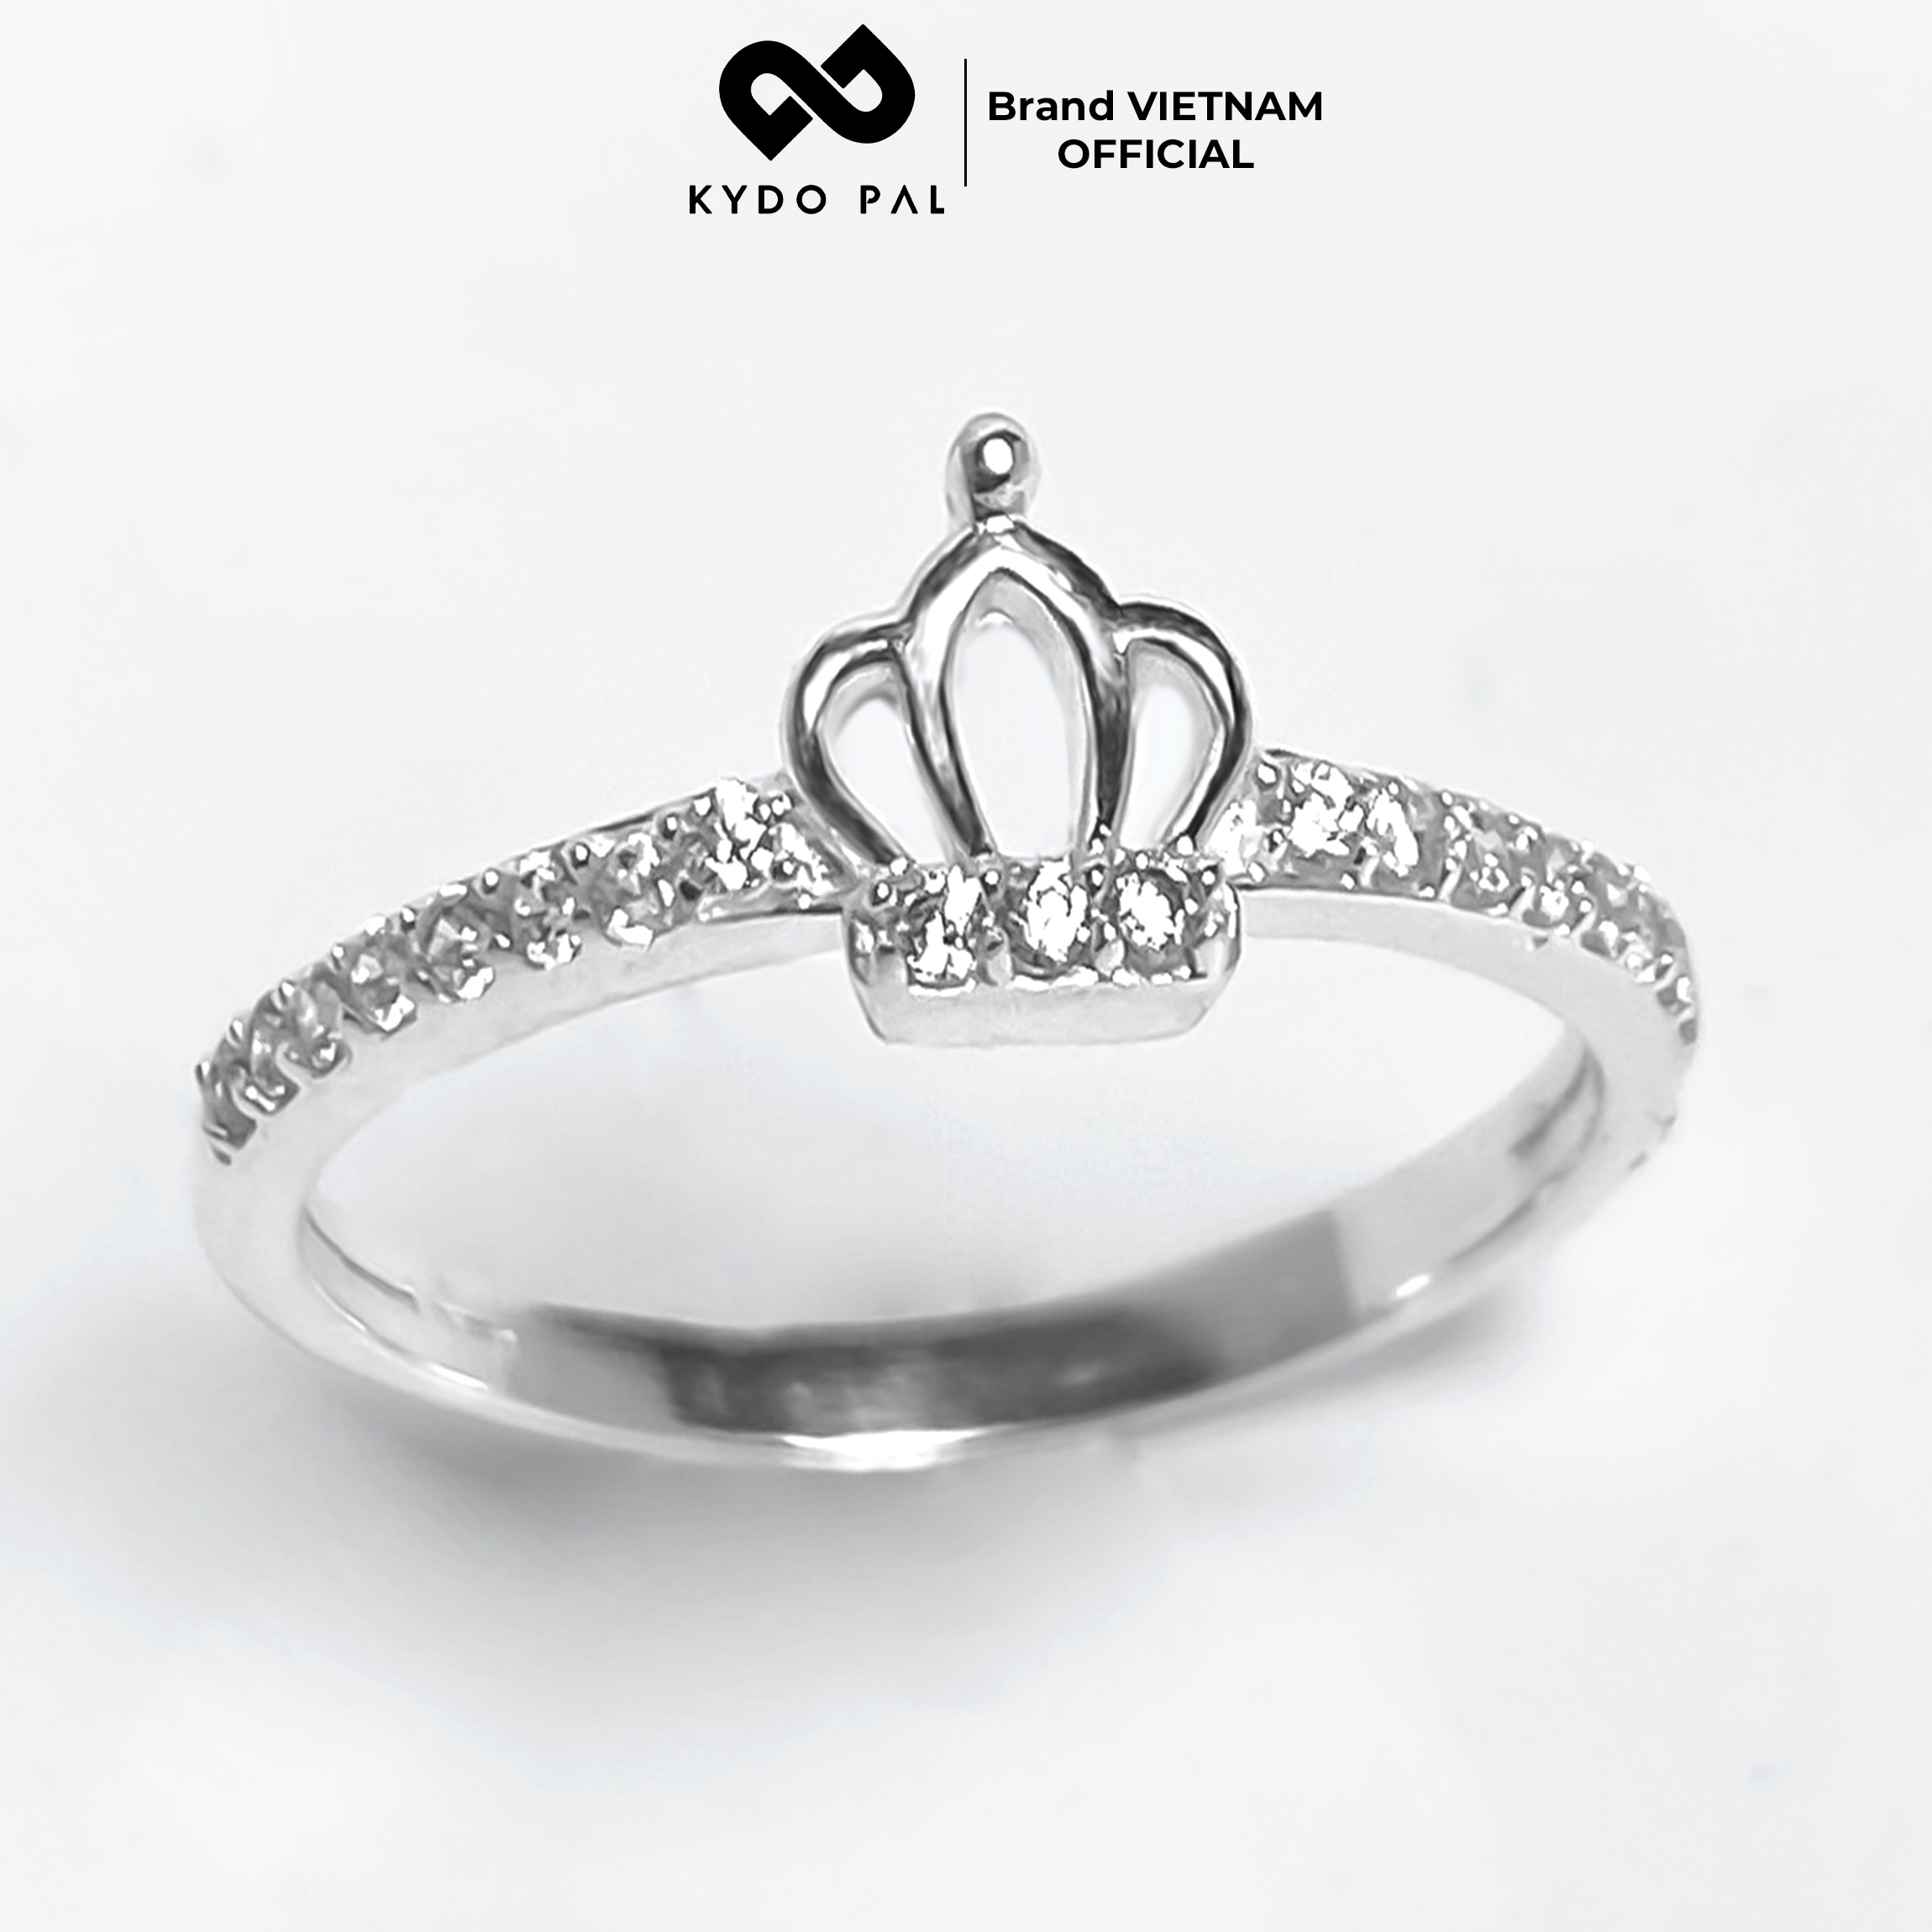 Nhẫn bạc 925 KYDOPAL vương miện đính đá trang sức nữ cá tính cao cấp – 9N23